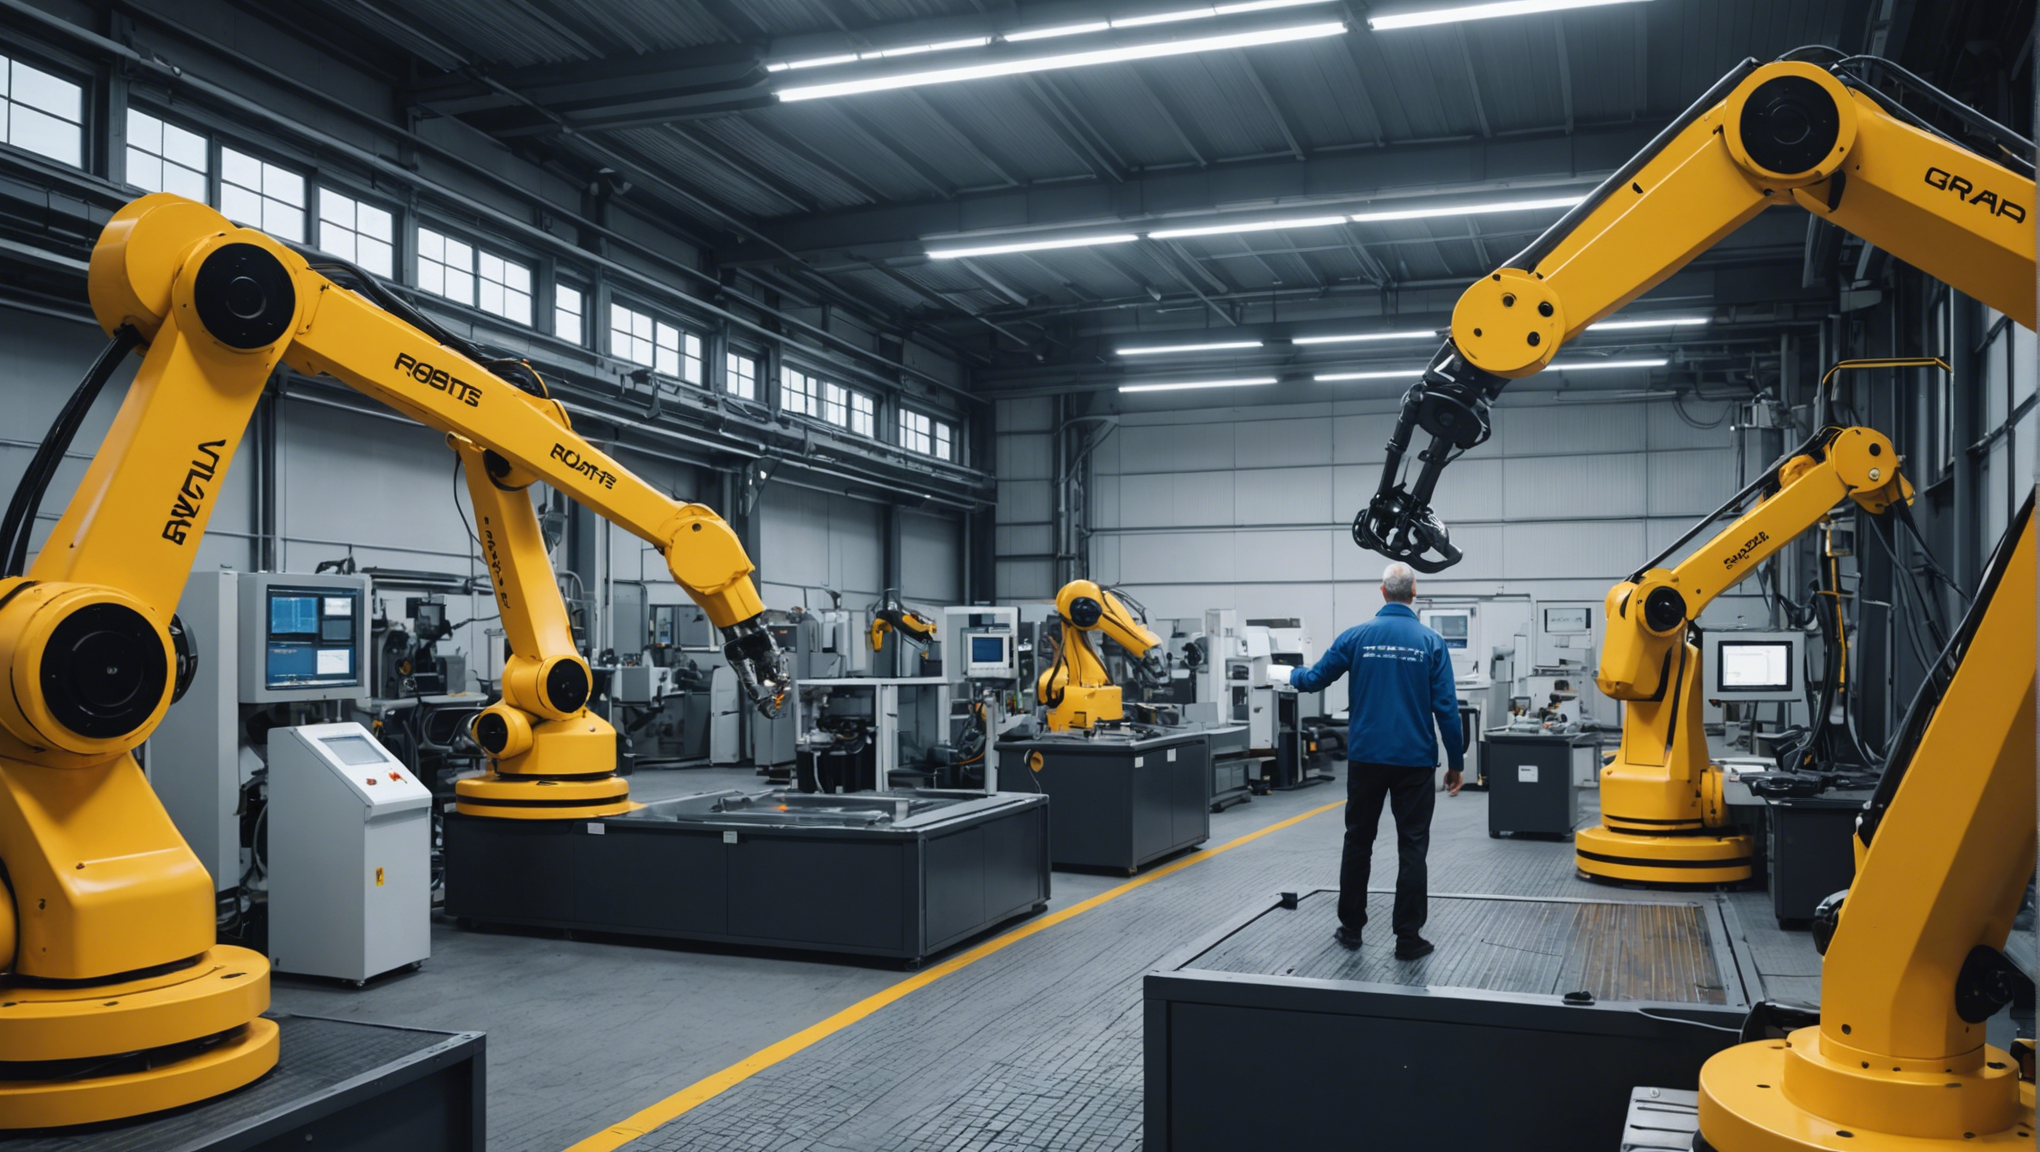 découvrez l'impact de la deuxième vague d'automatisation sur l'industrie avec l'avènement des robots industriels et leurs implications sur la productivité et l'emploi.